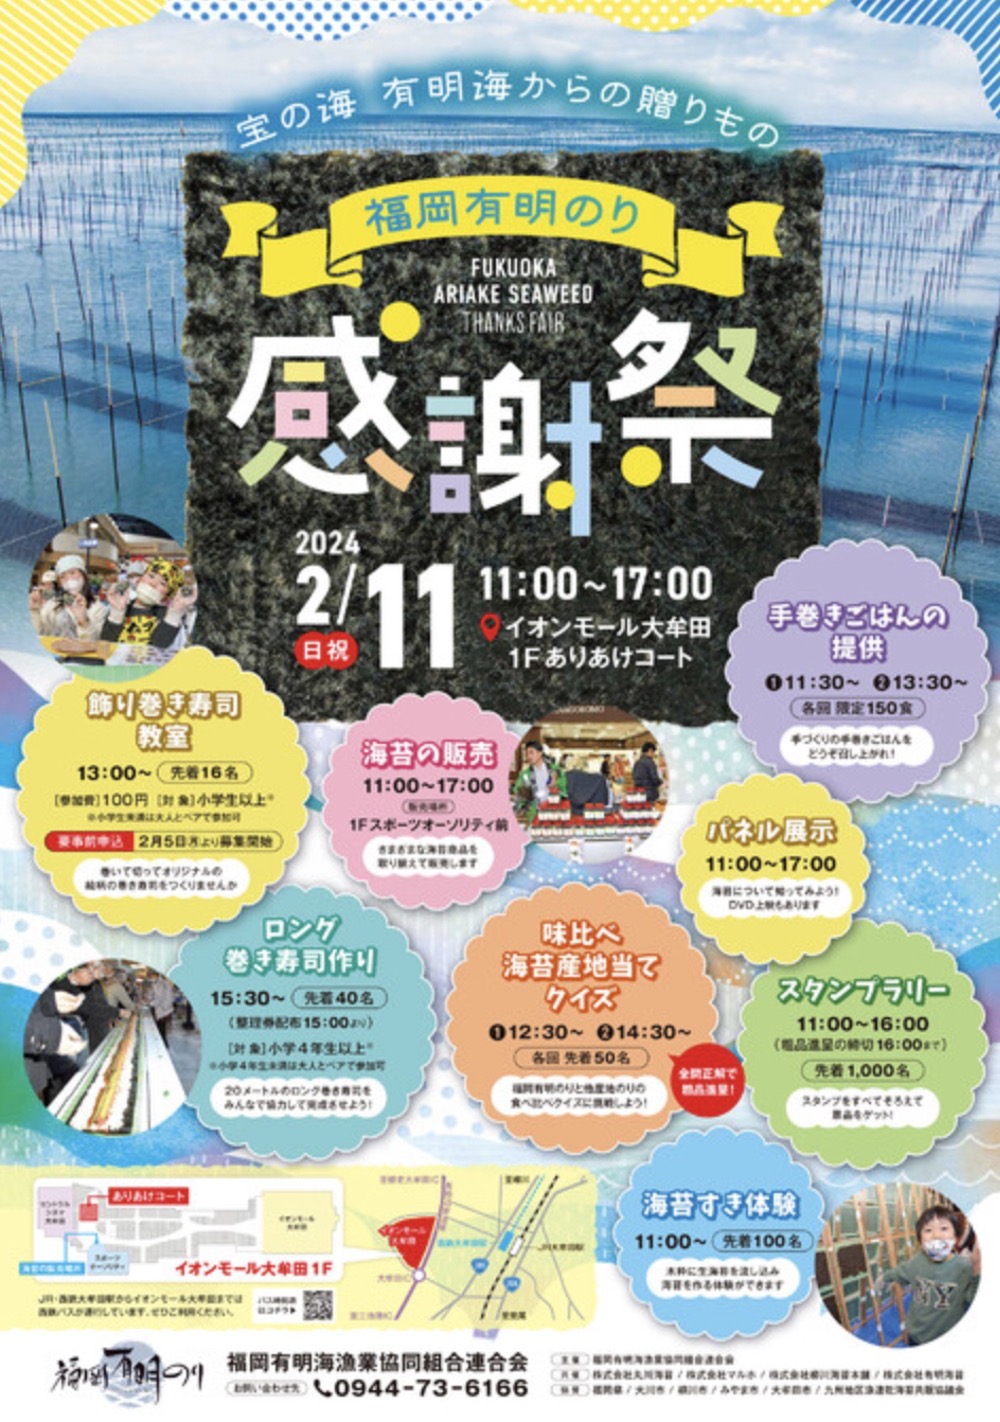 福岡有明のり「感謝祭」海苔の販売や飾り巻き寿司教室、味比べ 海苔産地当てクイズなど開催